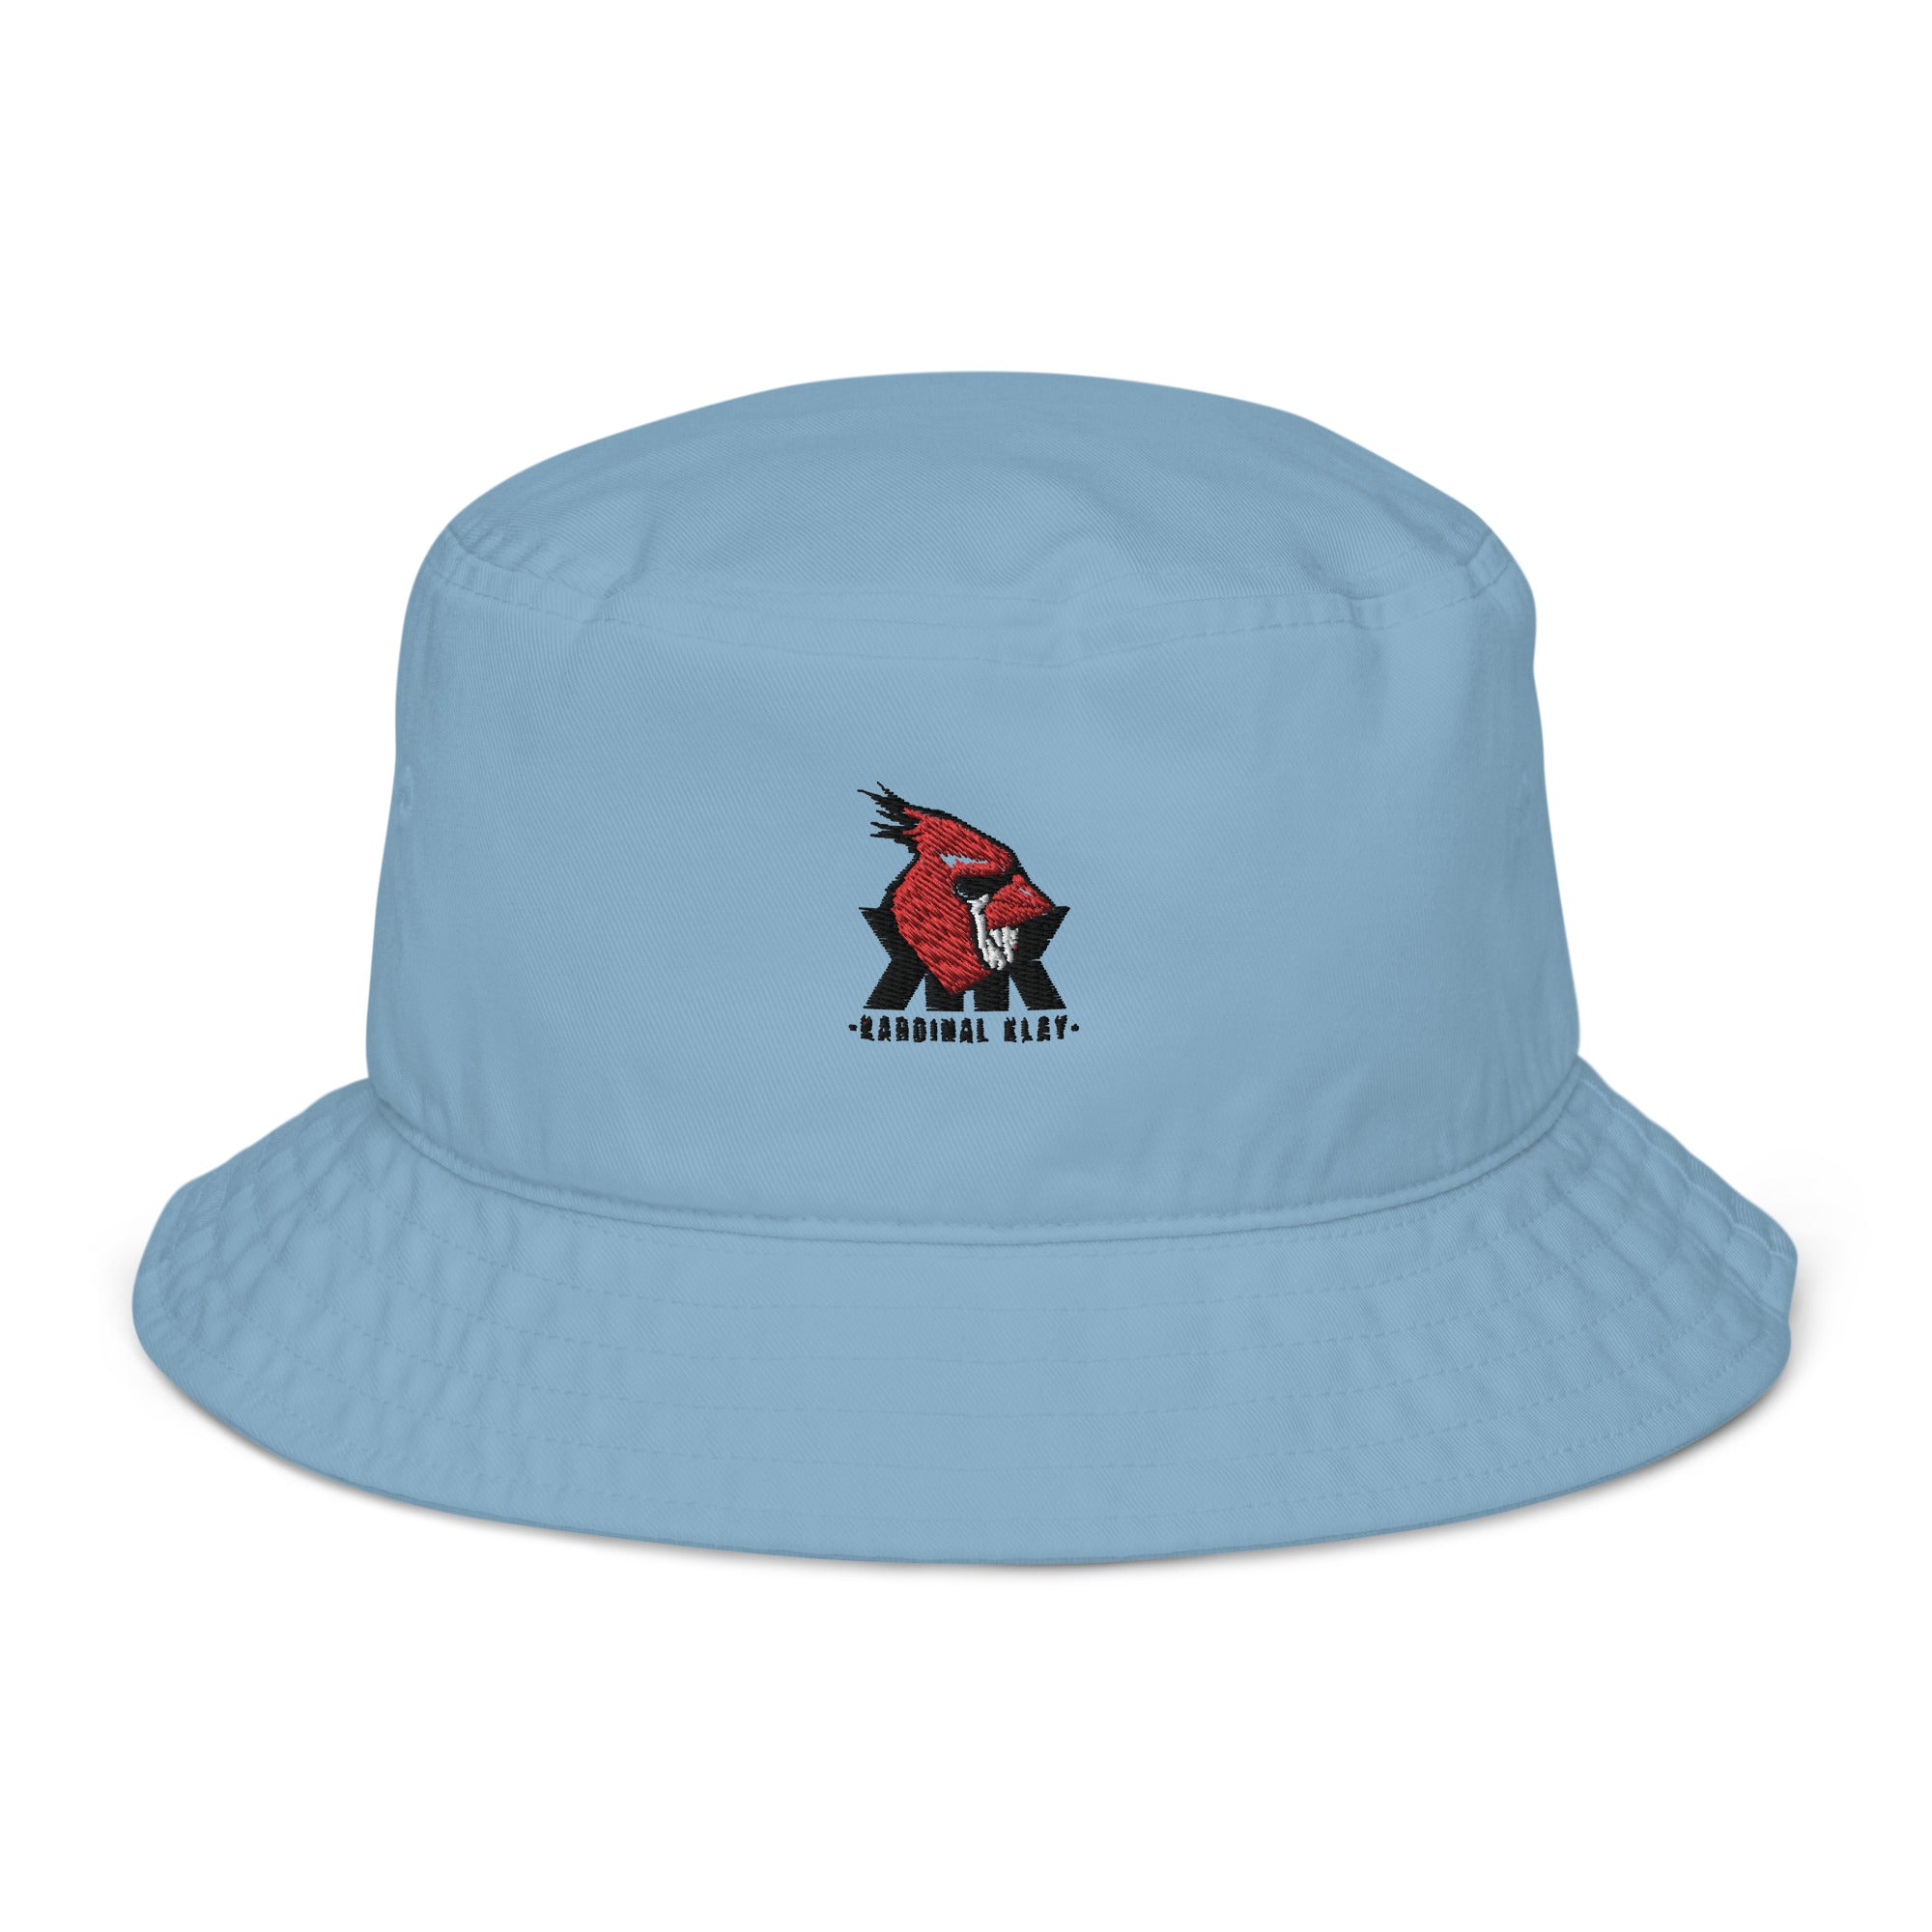 Exclusive Kardinal Klay bucket hat.